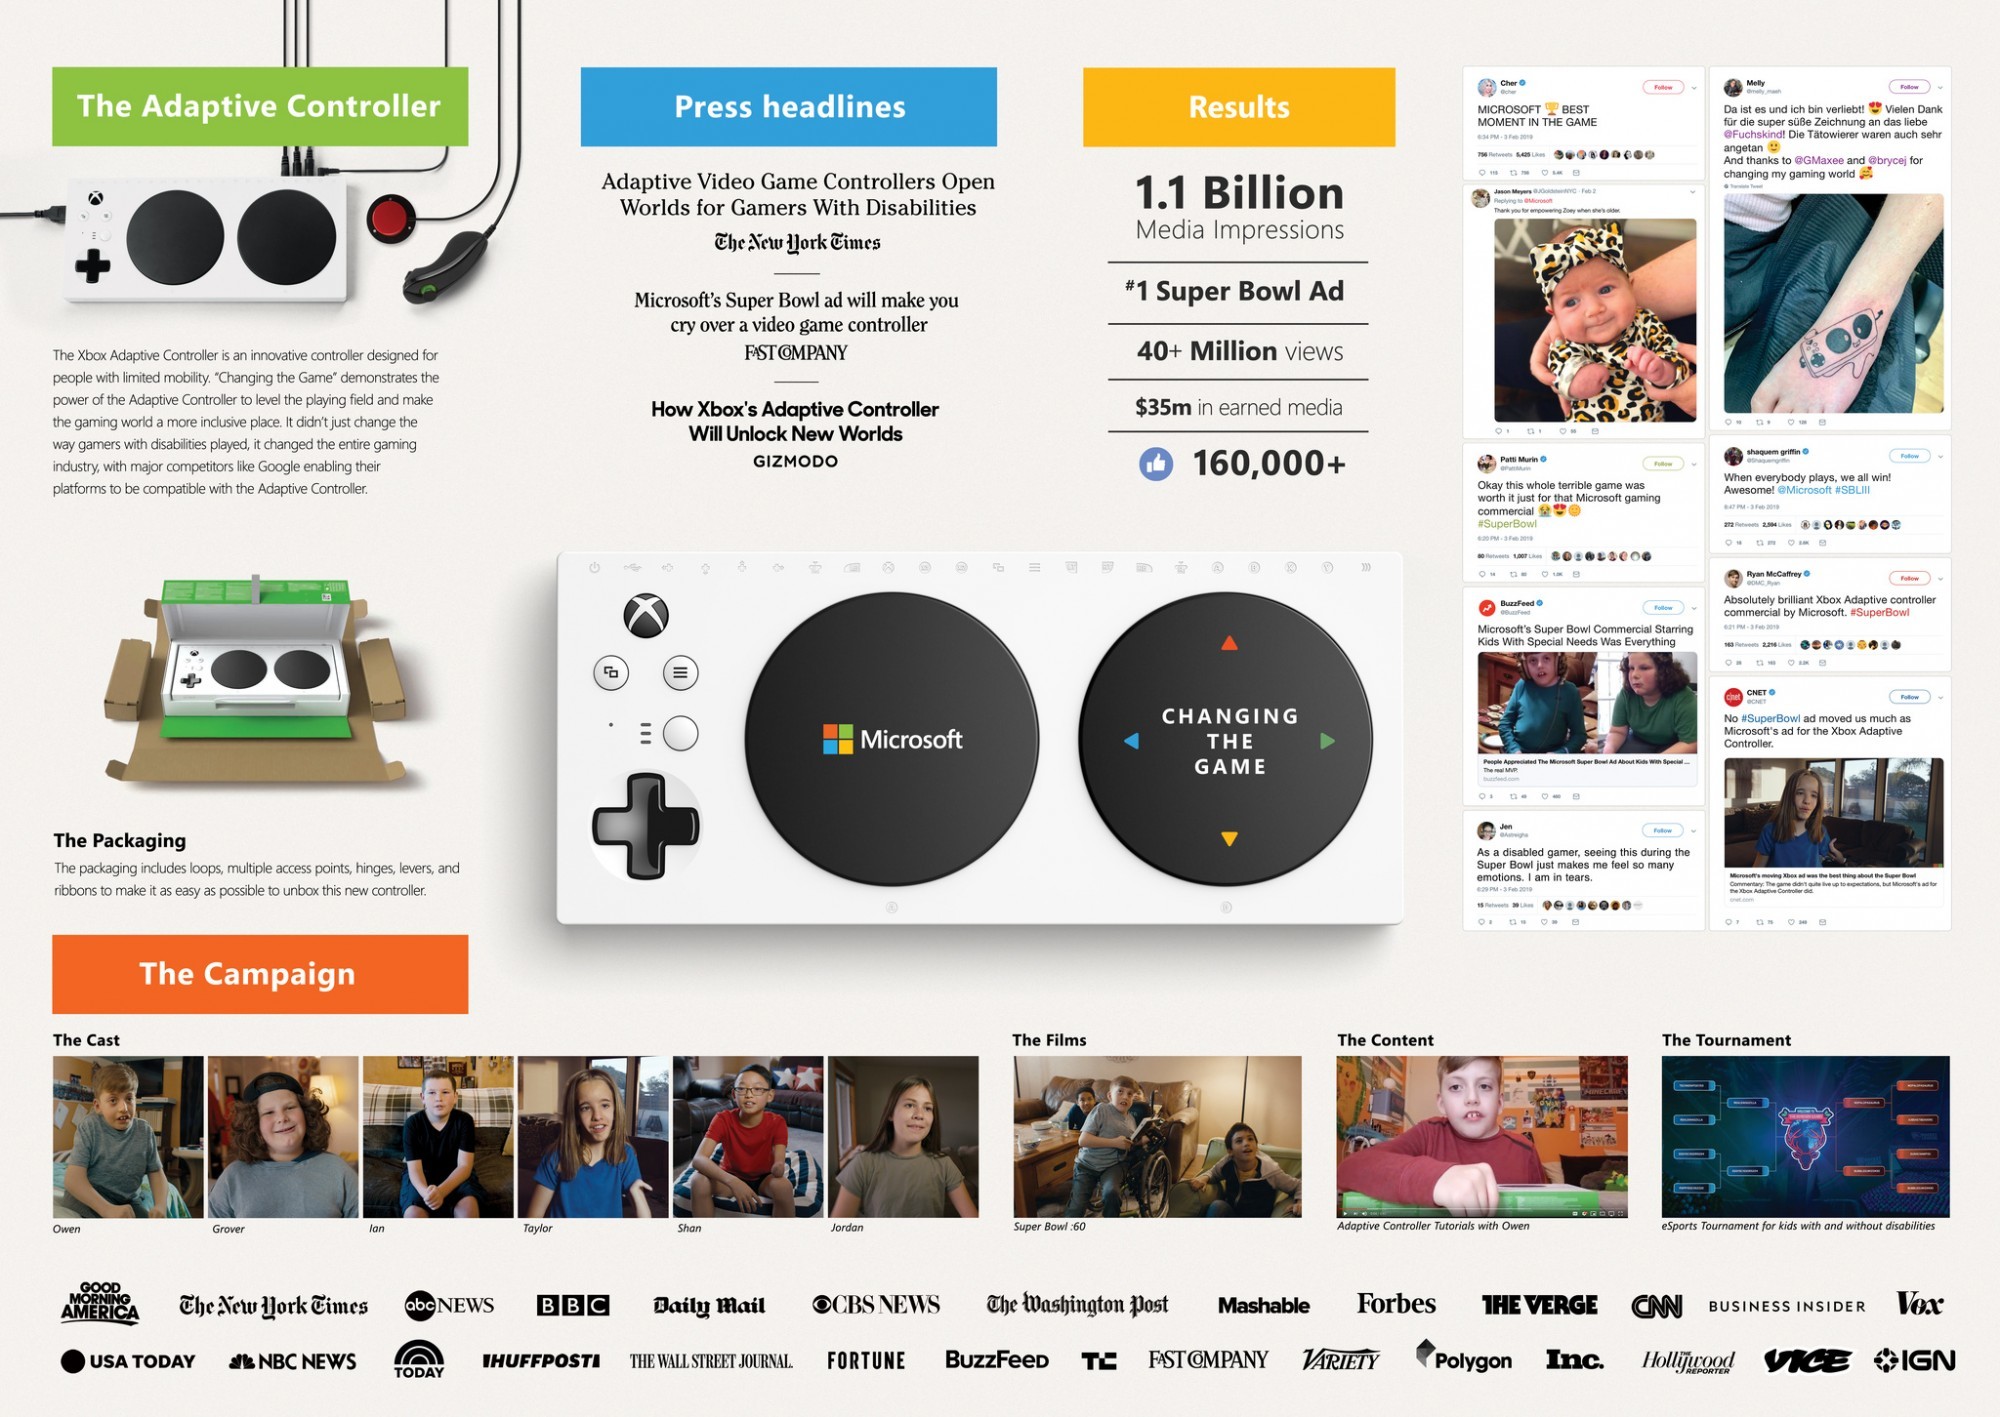 Campaña Destacada: Changing The Game, un importante movimiento de inclusión por parte de Microsoft